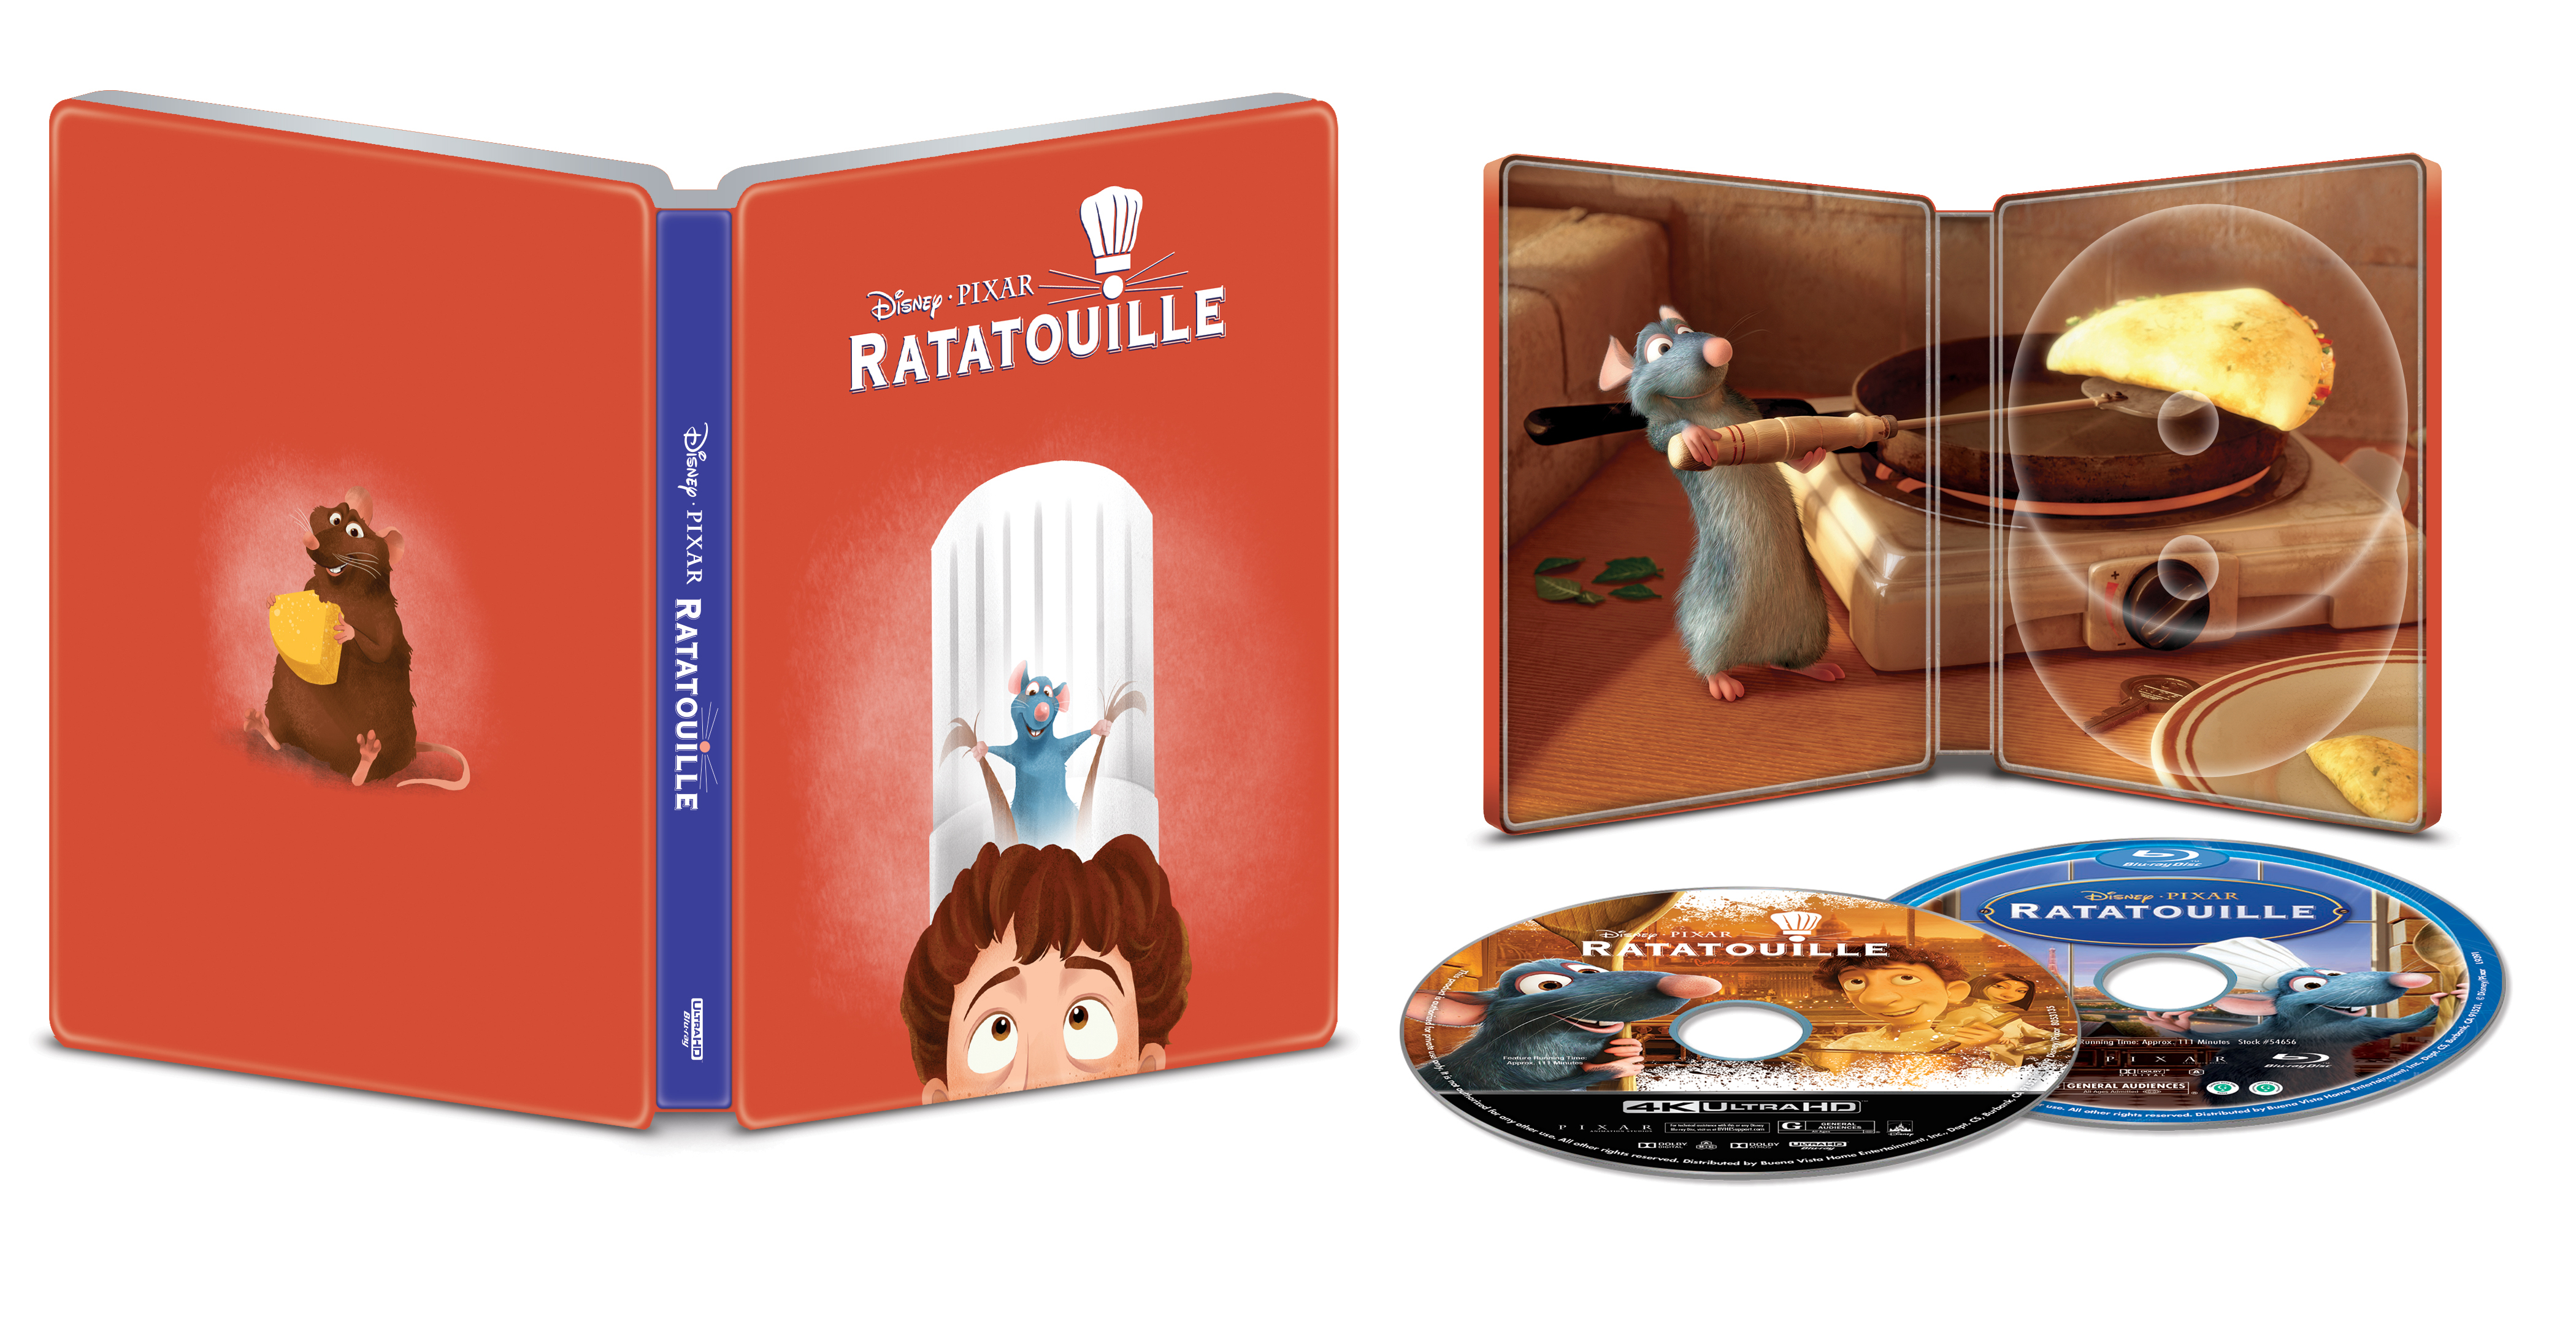 Ratatouille [SteelBook] [Includes Digital Copy] [4K Ultra HD Blu-ray/Blu-ray] [Only @ Best Buy] [2007]